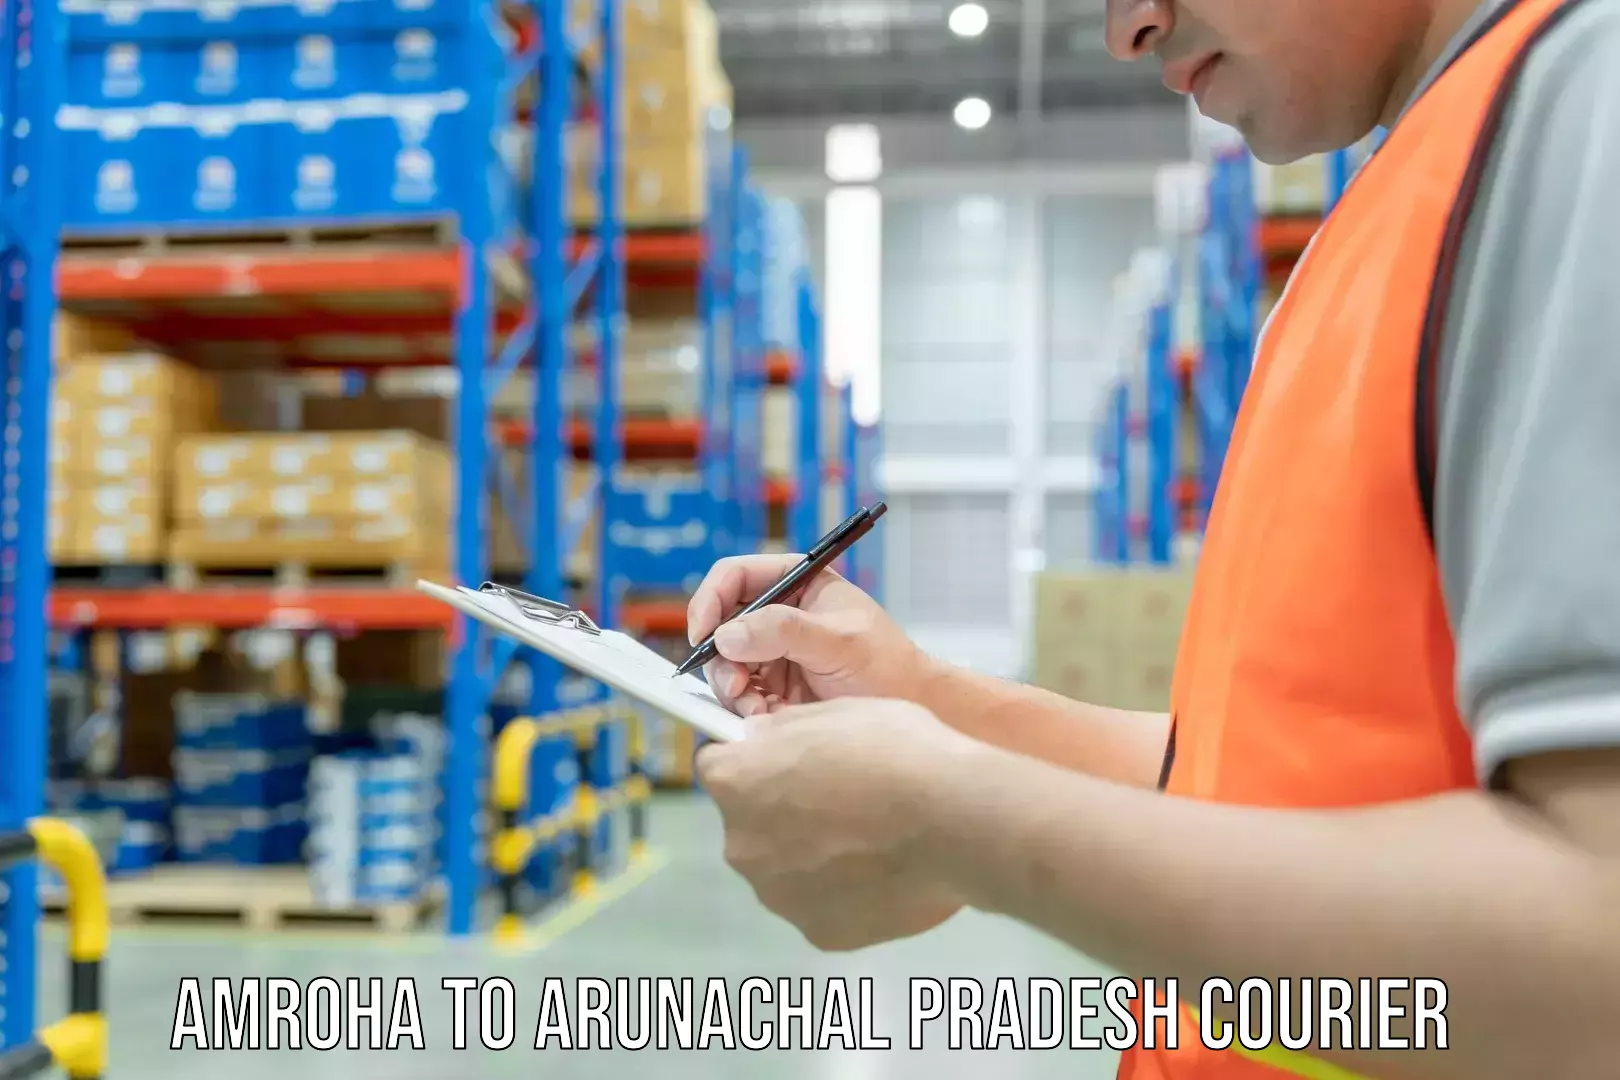 Flexible delivery schedules Amroha to Arunachal Pradesh